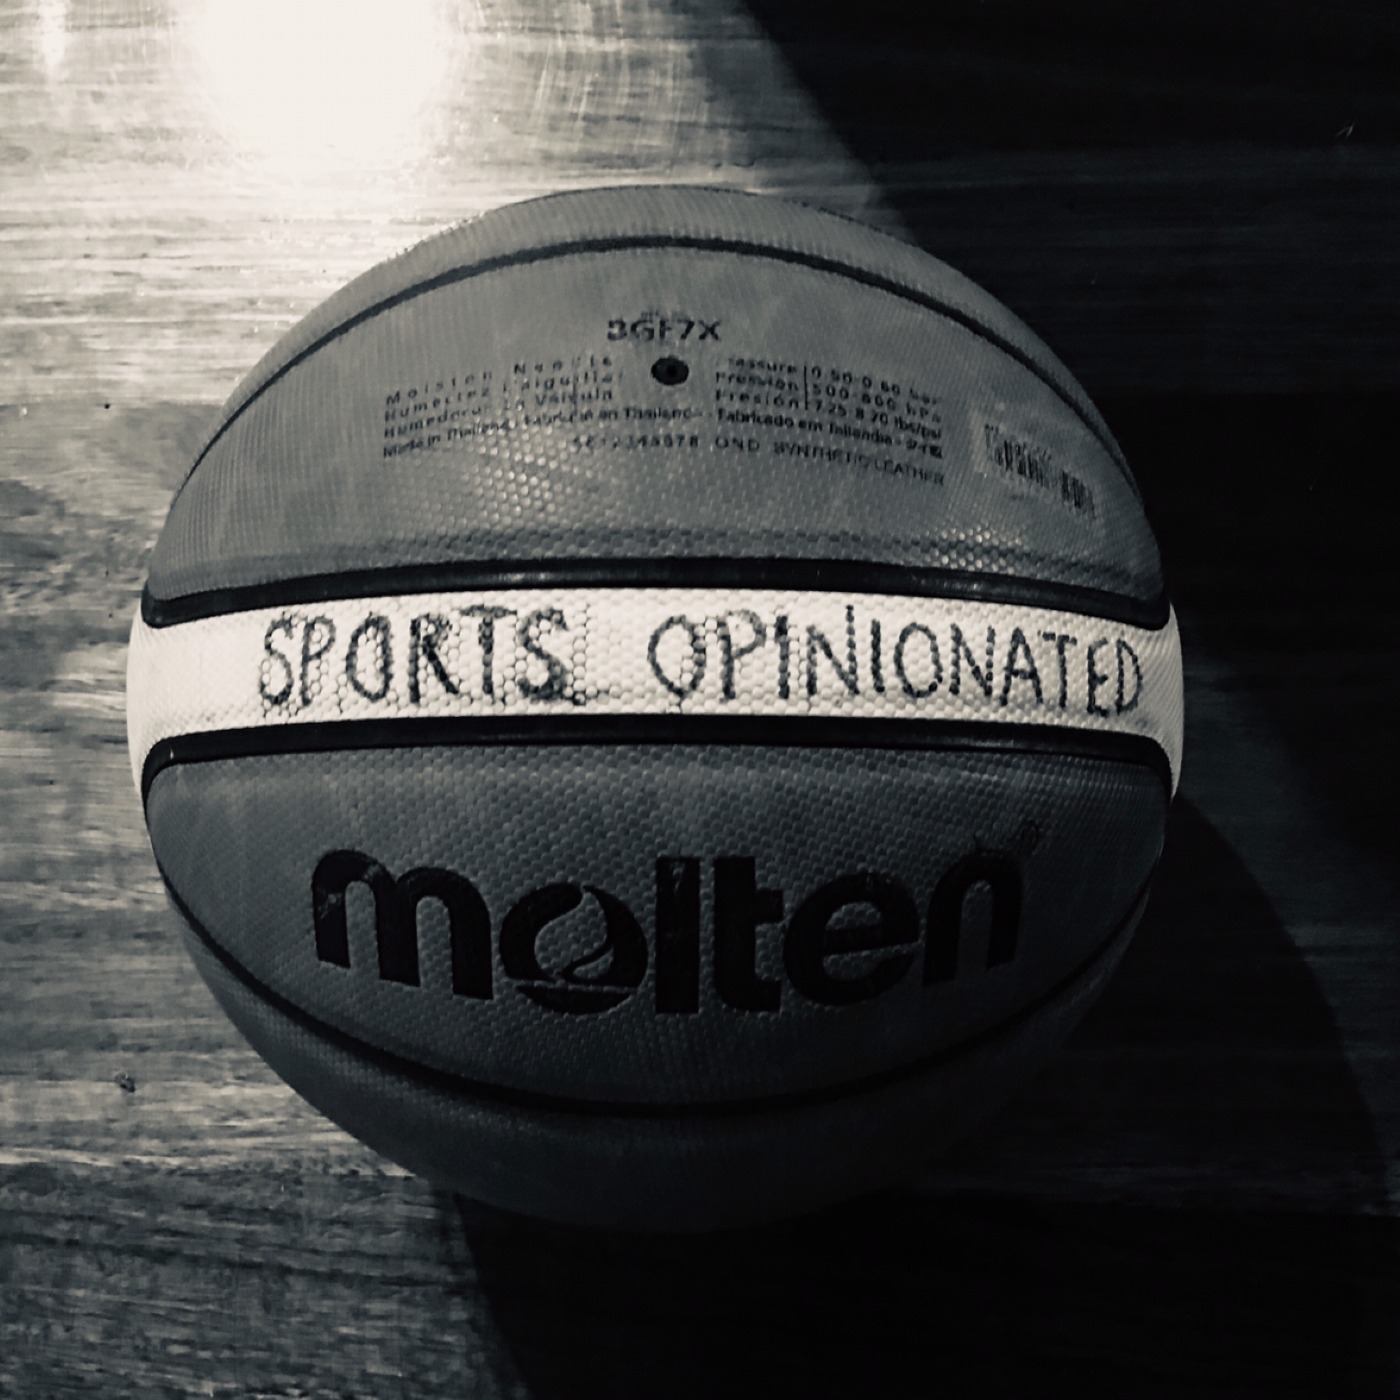  Sports Opinionated - Pod 8 - 2020 NBA Playoffs - Week 1